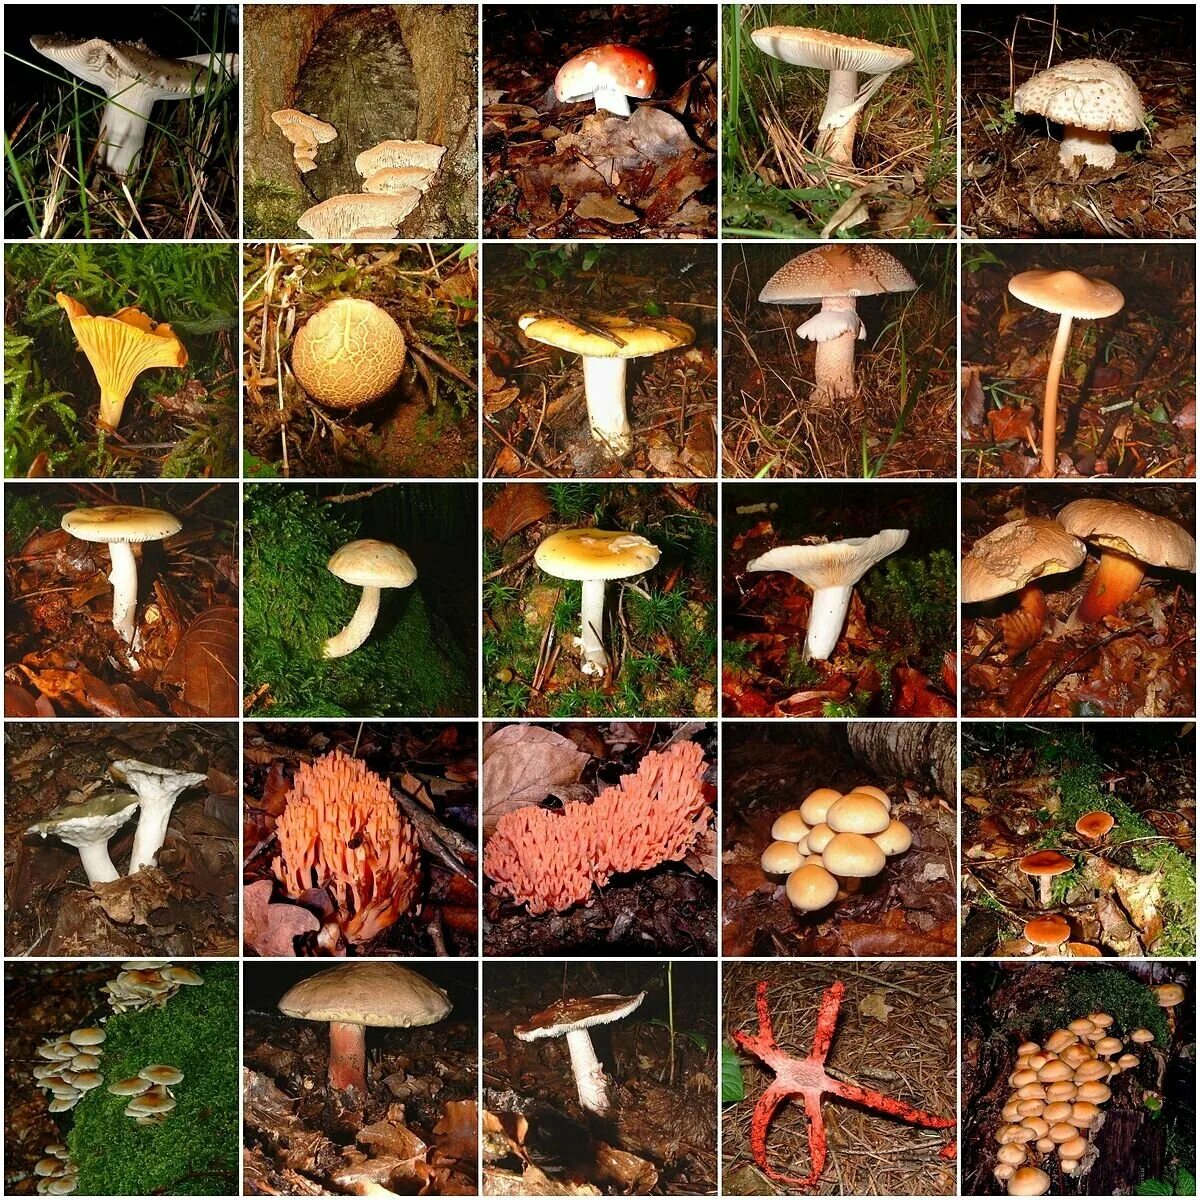 Какие грибы в начале. Лесные грибы съедобные и несъедобные. Съедобные грибы в ПМР. Съедобные грибы и несъедобные грибы Ленинградской области. Съедобные грибы Ленинградской области.